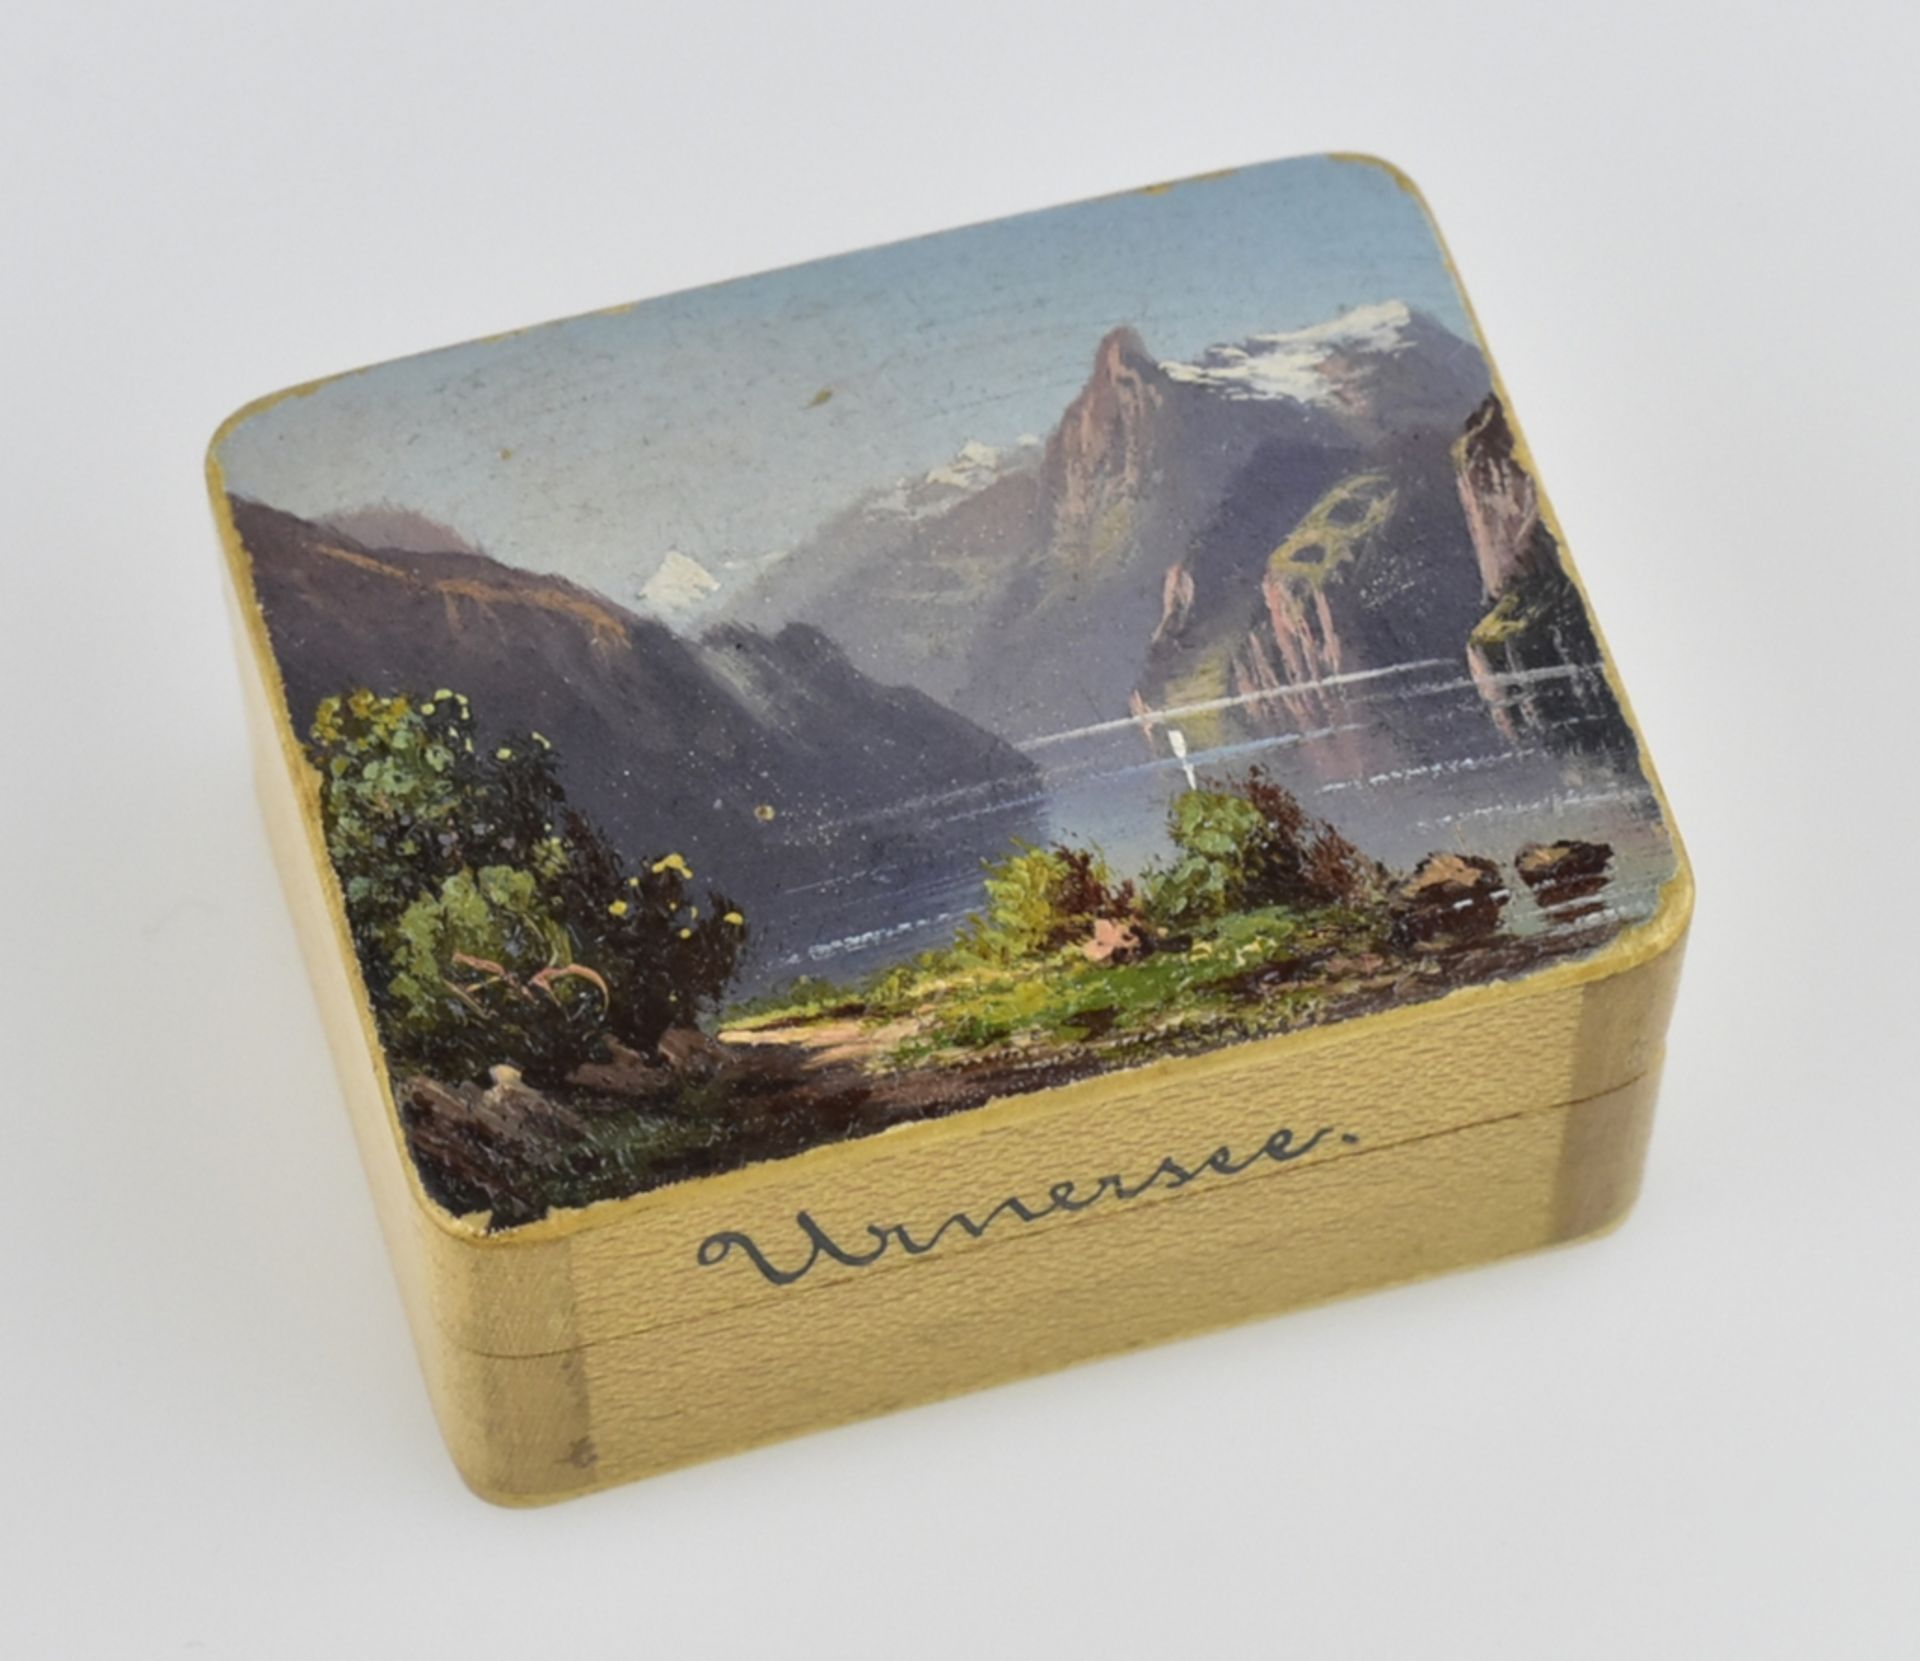 Holzdöschen mit gemalter Ansicht des Urnersees. Um 1900. L 4,5 cm - Bild 2 aus 2